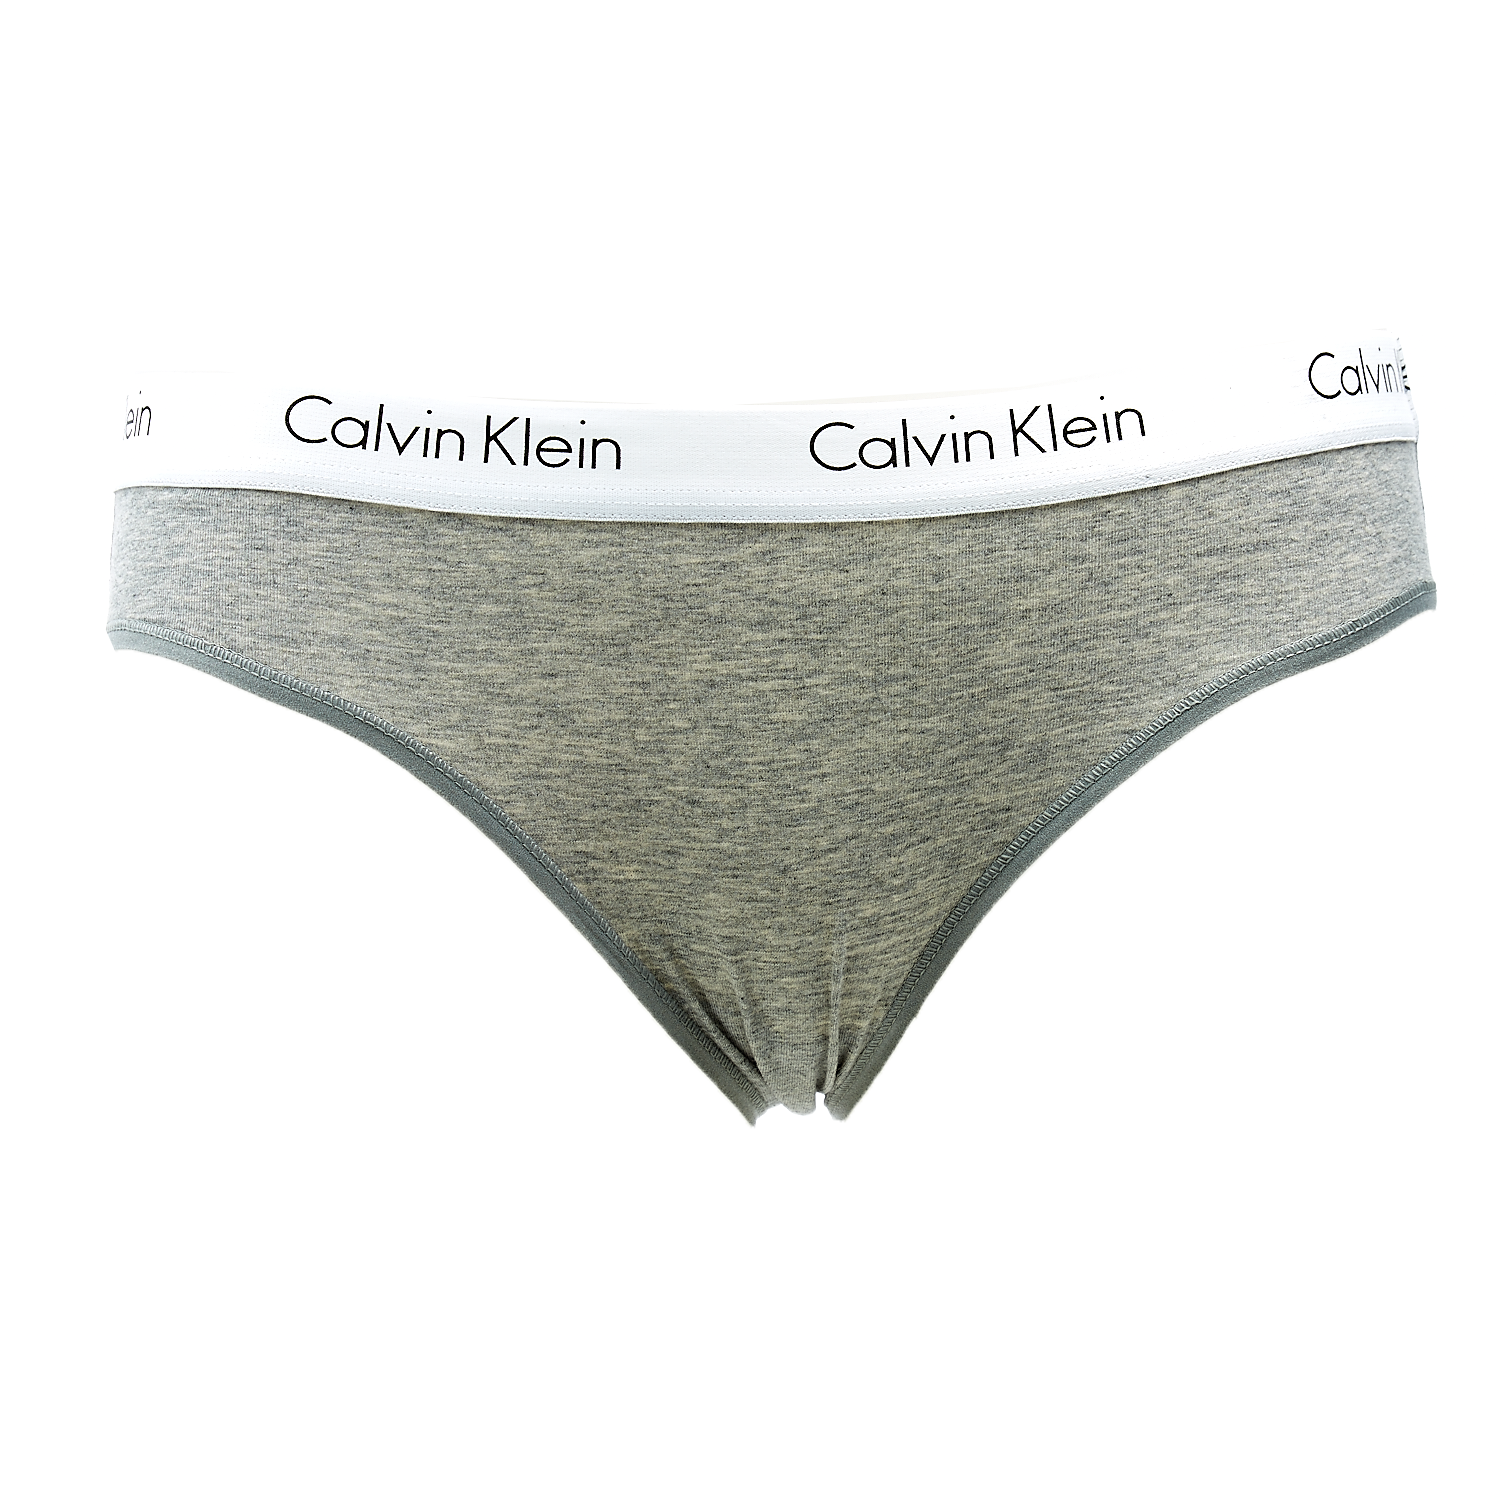 Γυναικεία/Ρούχα/Εσώρουχα/Σλιπ CK UNDERWEAR - Σλιπ Calvin Klein γκρι